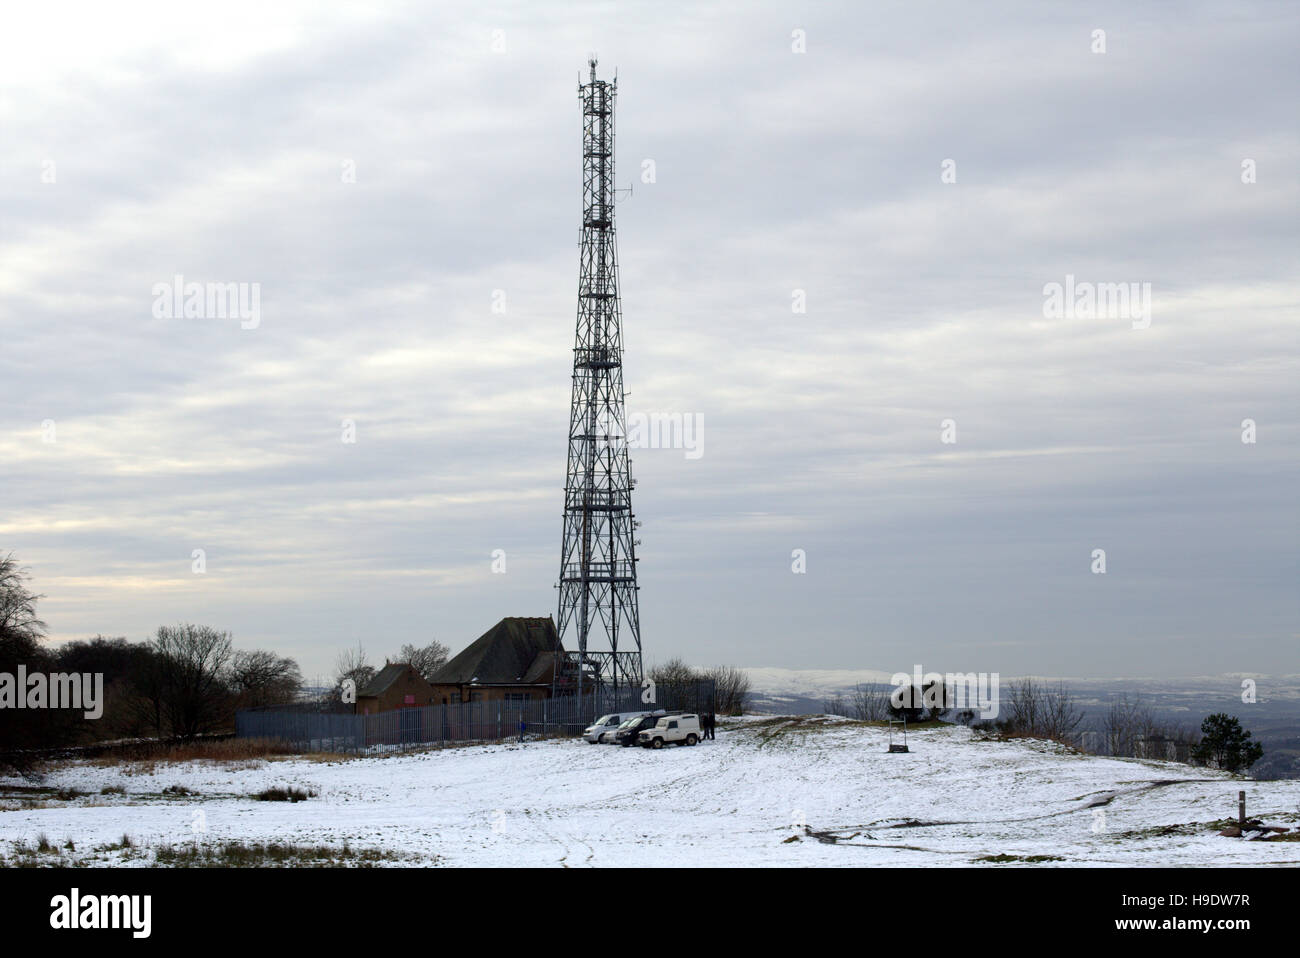 La polizia le comunicazioni radio cathkin montante braes glasgow cellulare costruire la torre Foto Stock